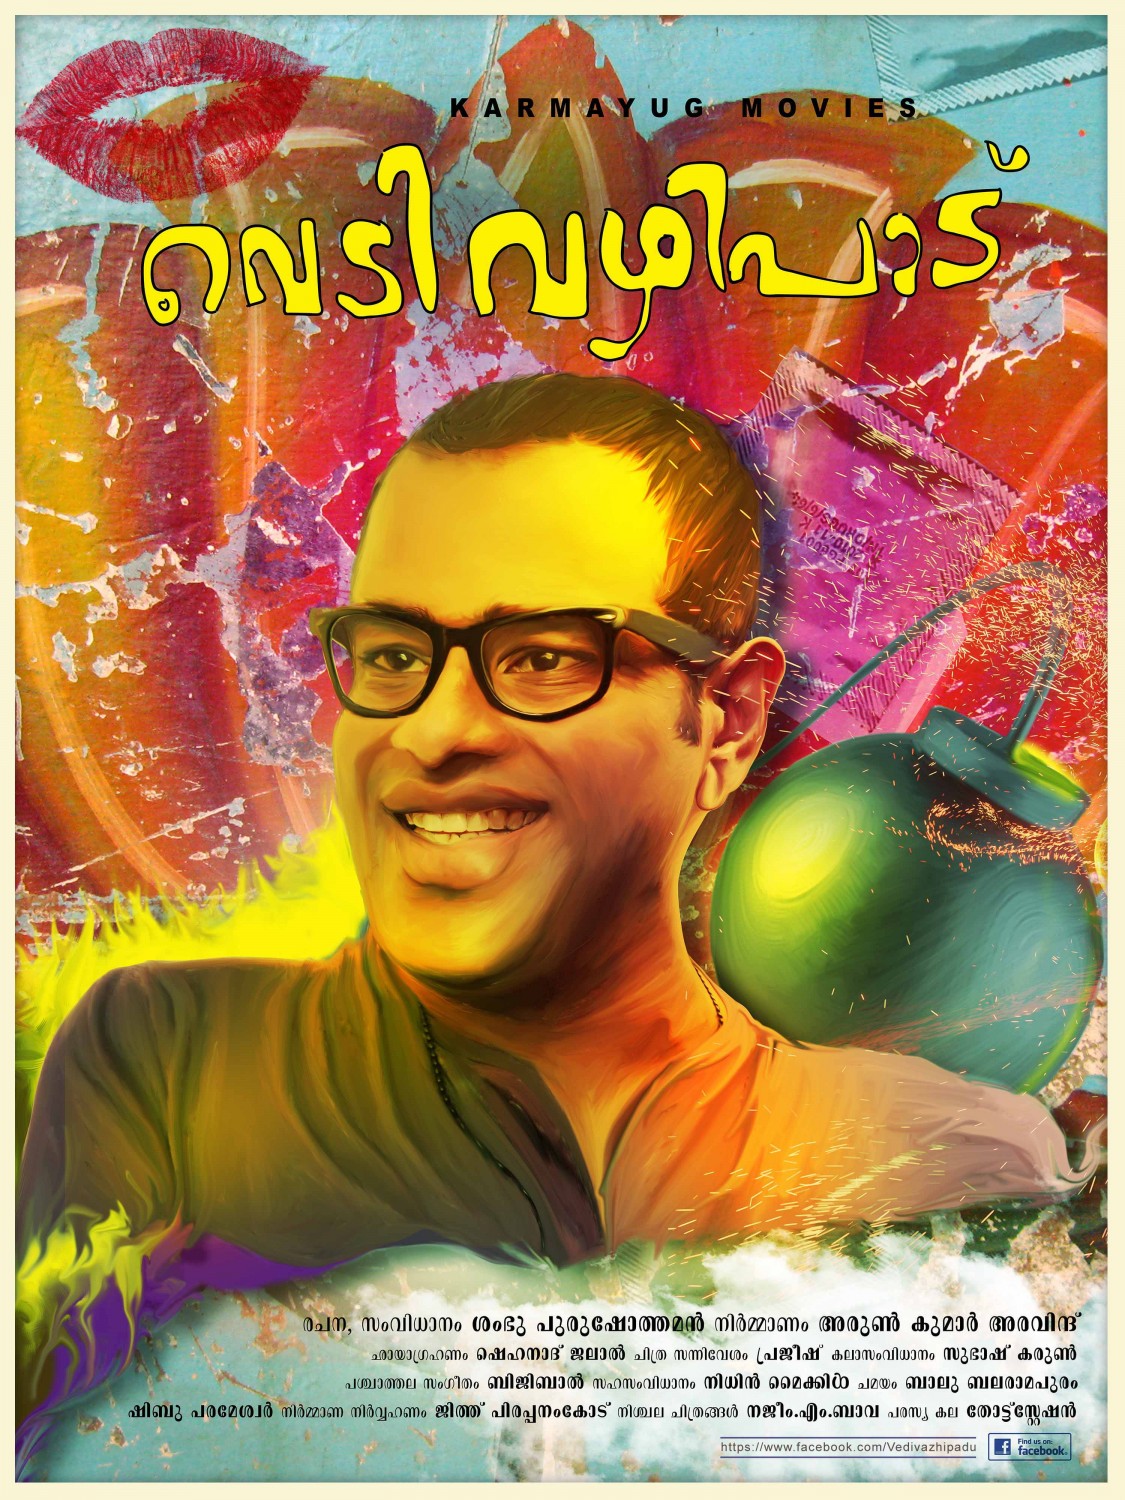 Extra Large Movie Poster Image for Vedivazhipadu (#6 of 13)